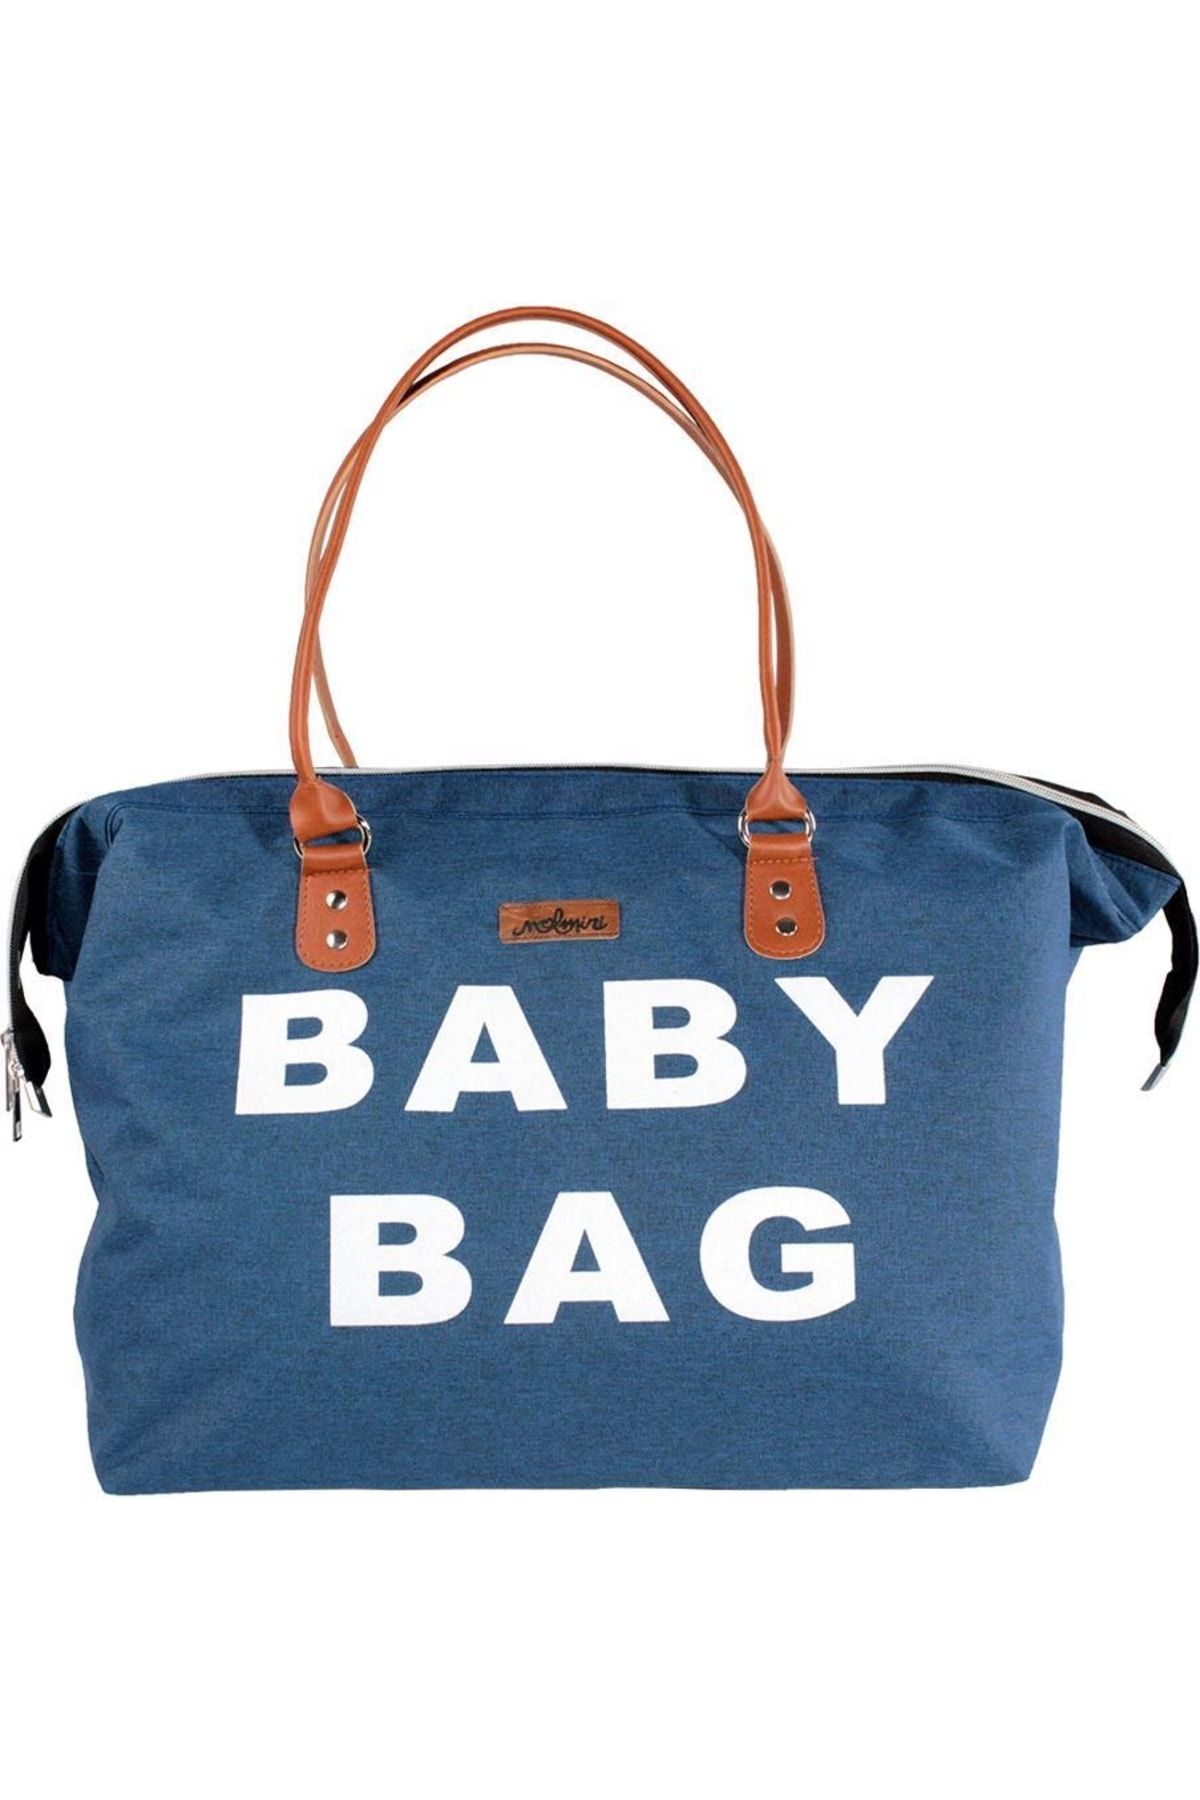 Molmini Anne Bebek Çantası, Bebek Bakım Çantası, Bebek Çantası, Mommy Bag, Baby Bag Mavi